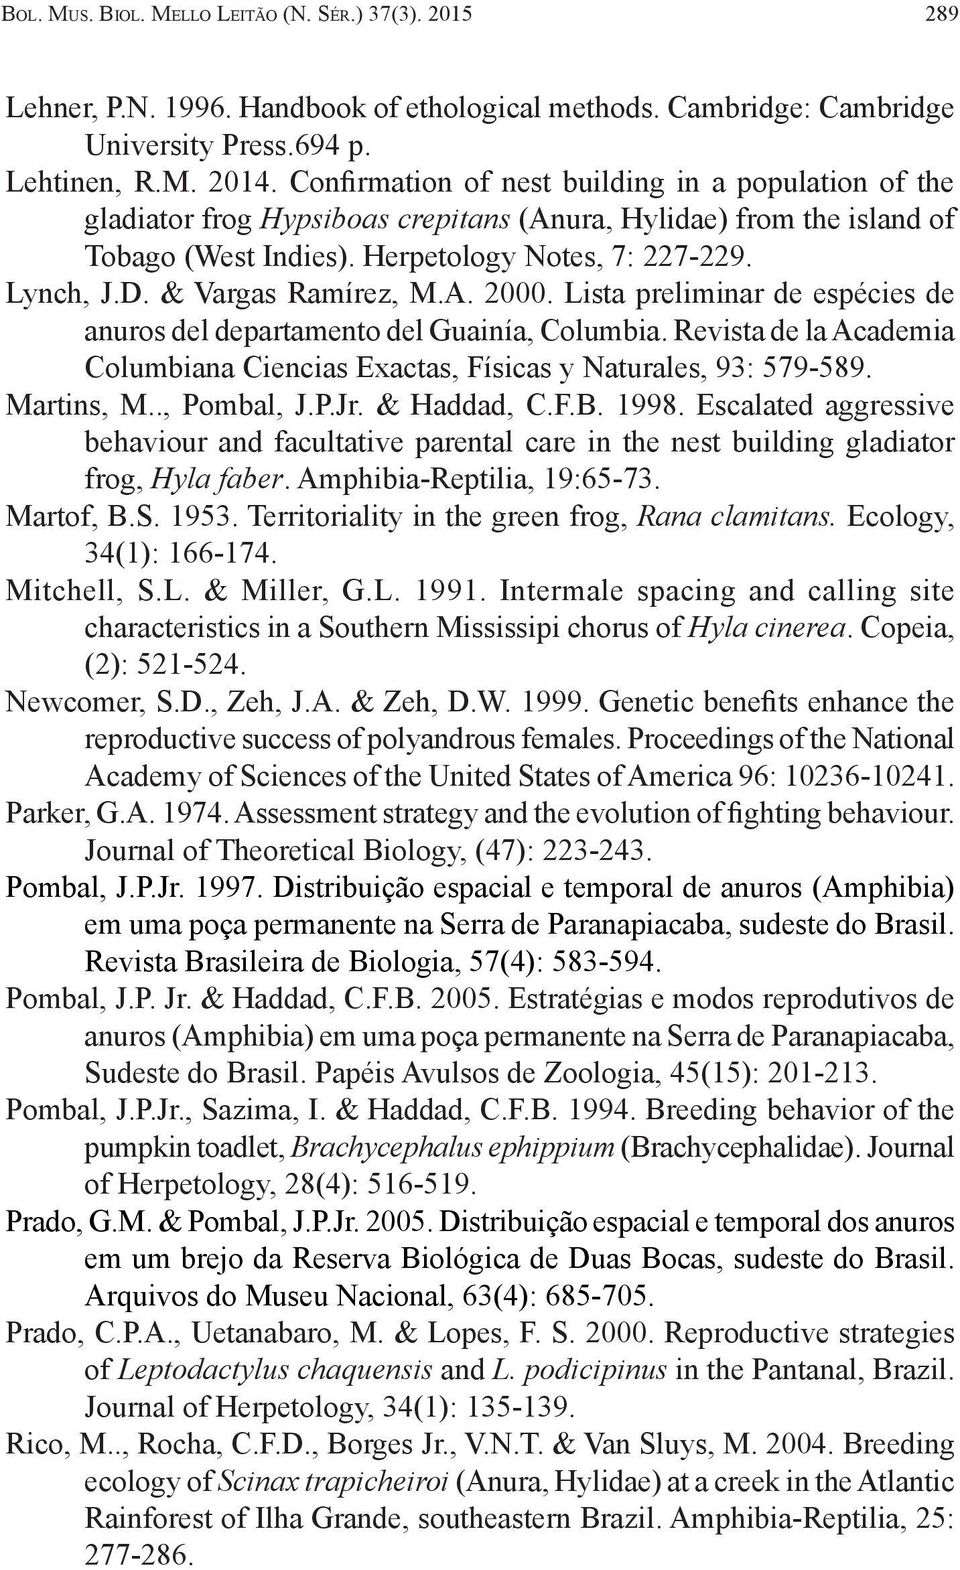 & Vargas Ramírez, M.A. 2000. Lista preliminar de espécies de anuros del departamento del Guainía, Columbia. Revista de la Academia Columbiana Ciencias Exactas, Físicas y Naturales, 93: 579-589.